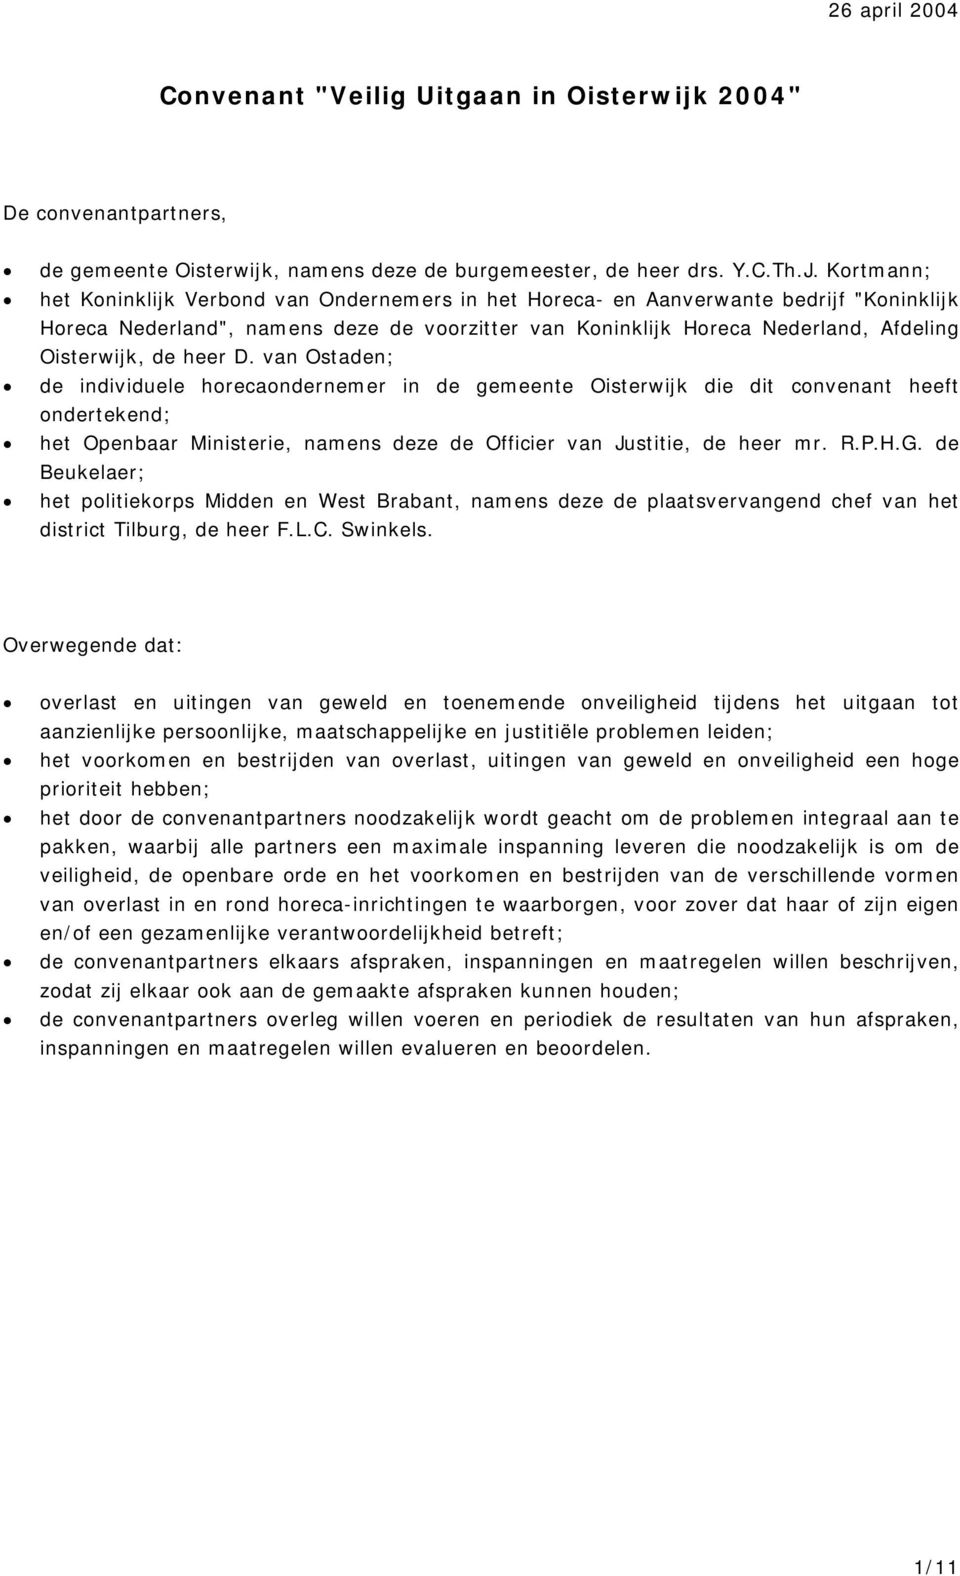 van Ostaden; de individuele horecaondernemer in de gemeente Oisterwijk die dit convenant heeft ondertekend; het, namens deze de Officier van Justitie, de heer mr. R.P.H.G.